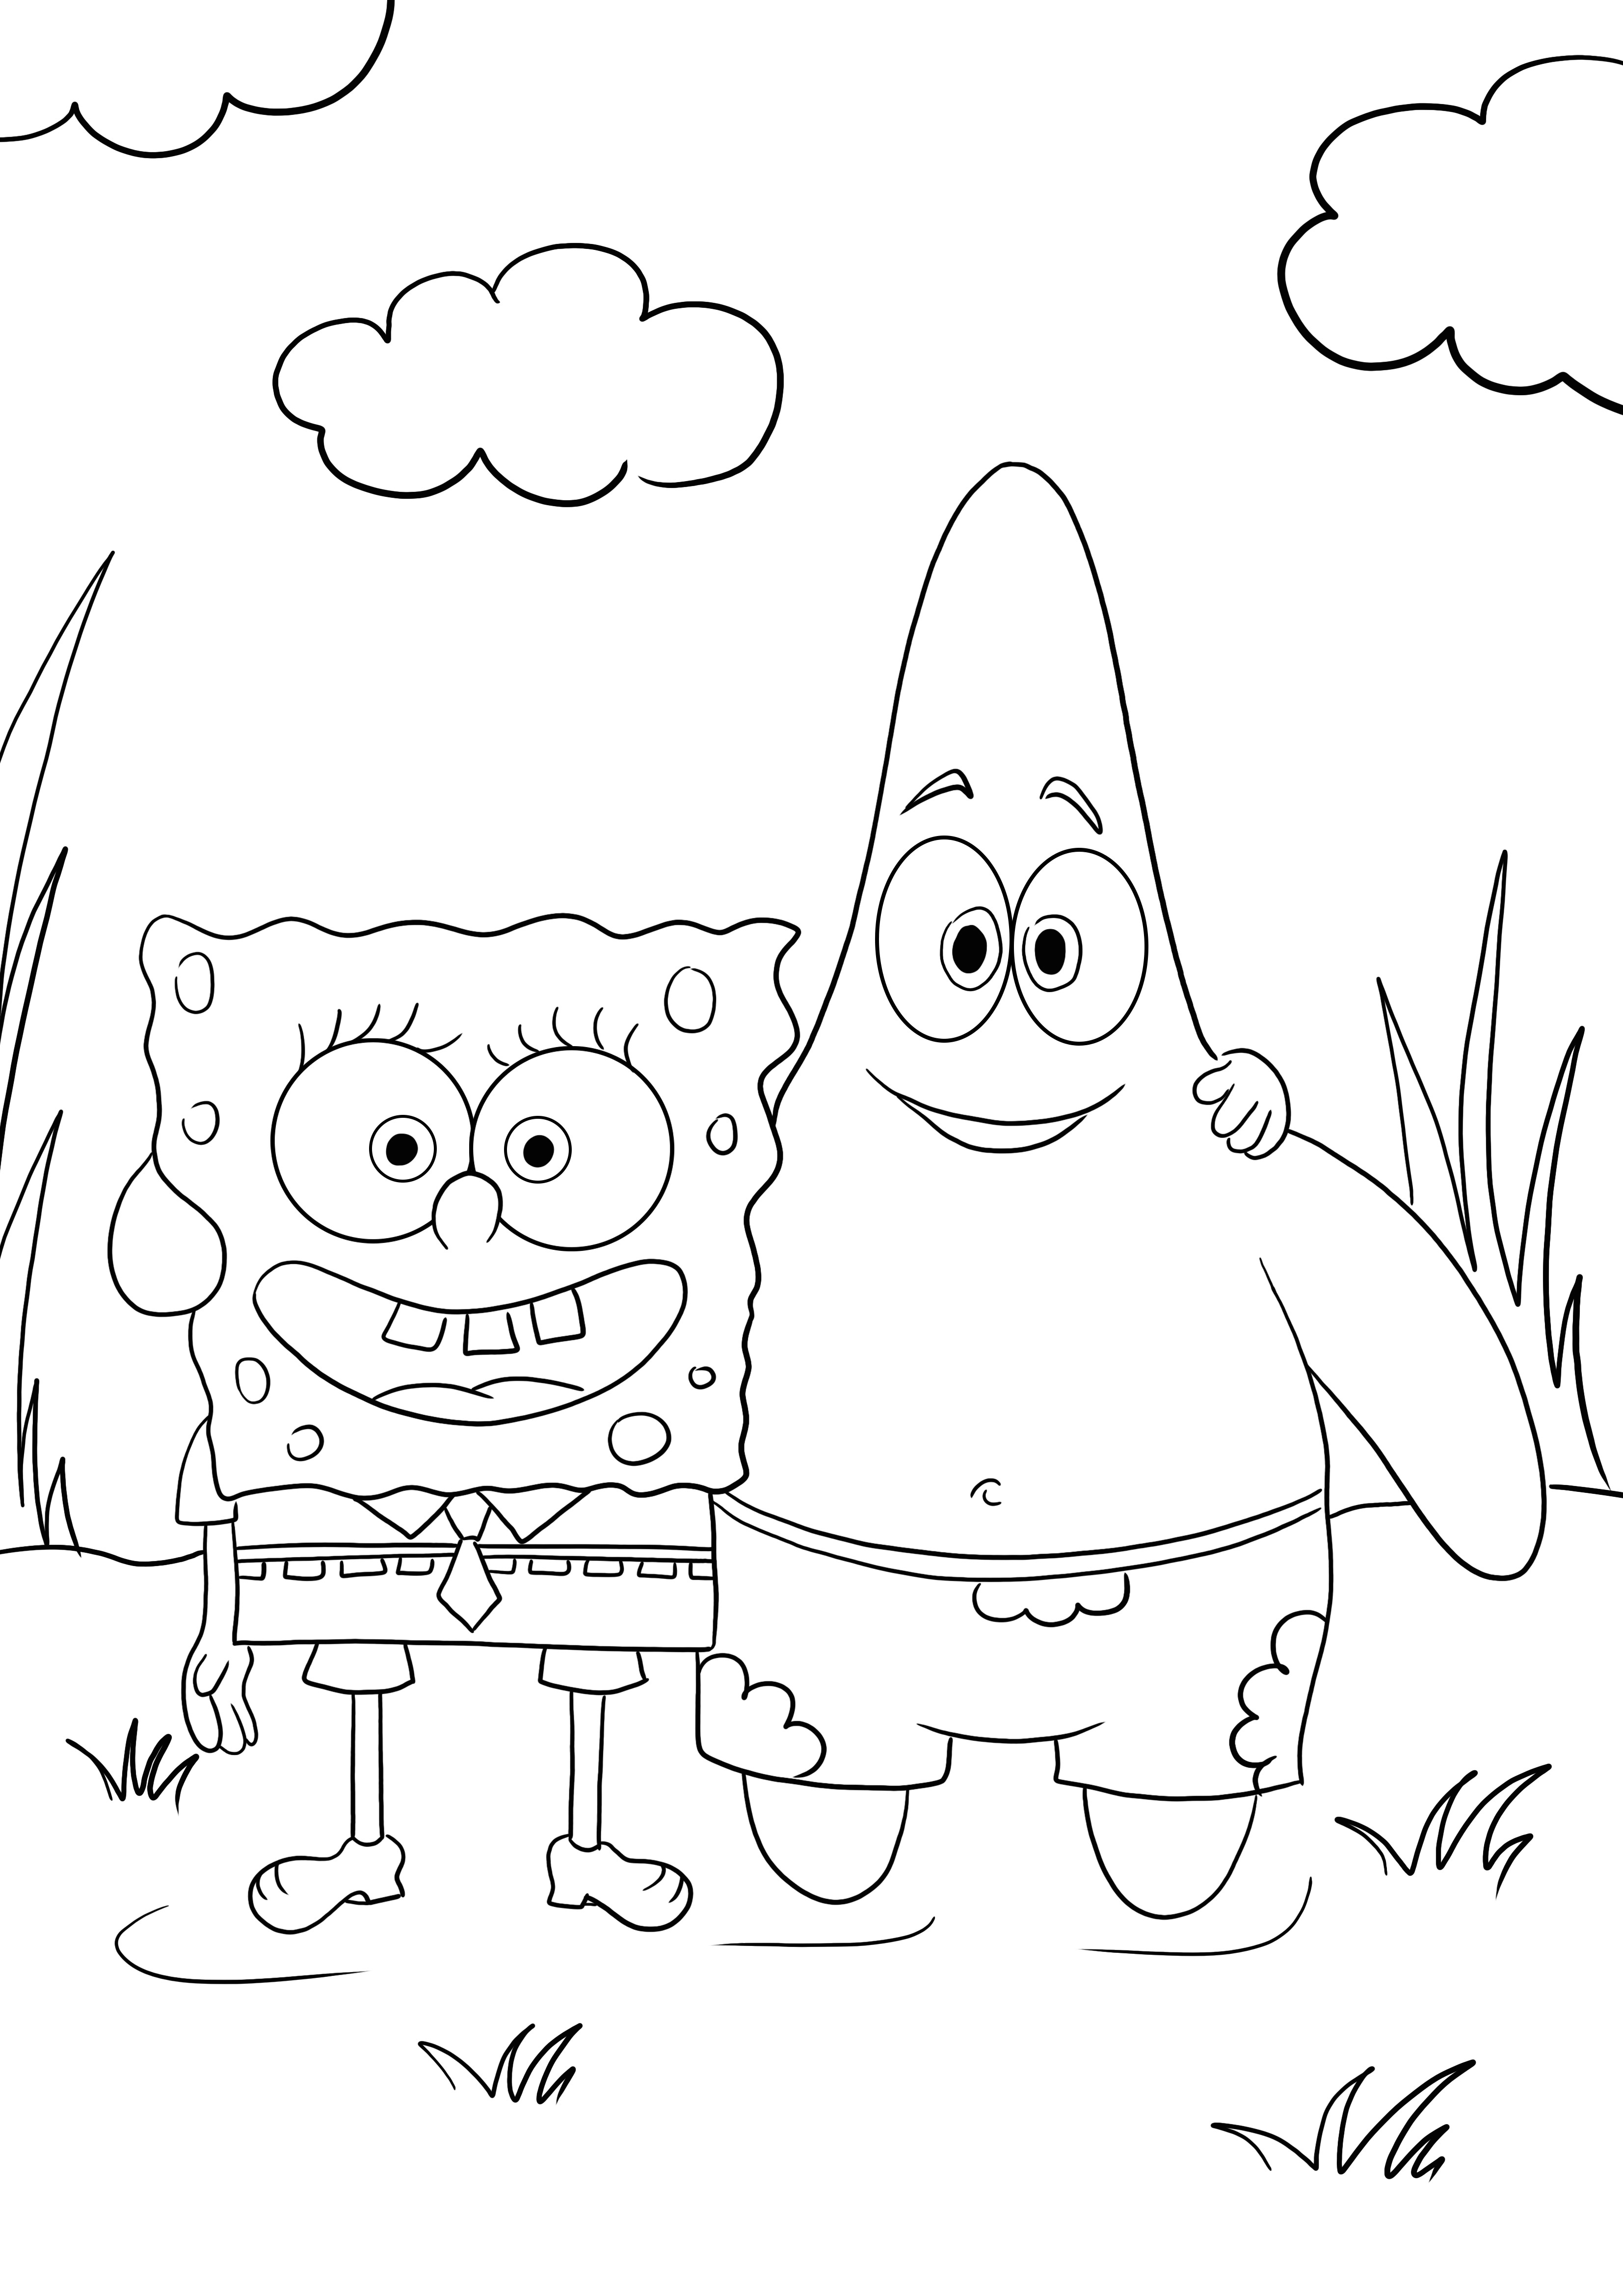 Sponge Bob i jego najlepszy przyjaciel Patryk za darmo do kolorowania i pobierania obrazków